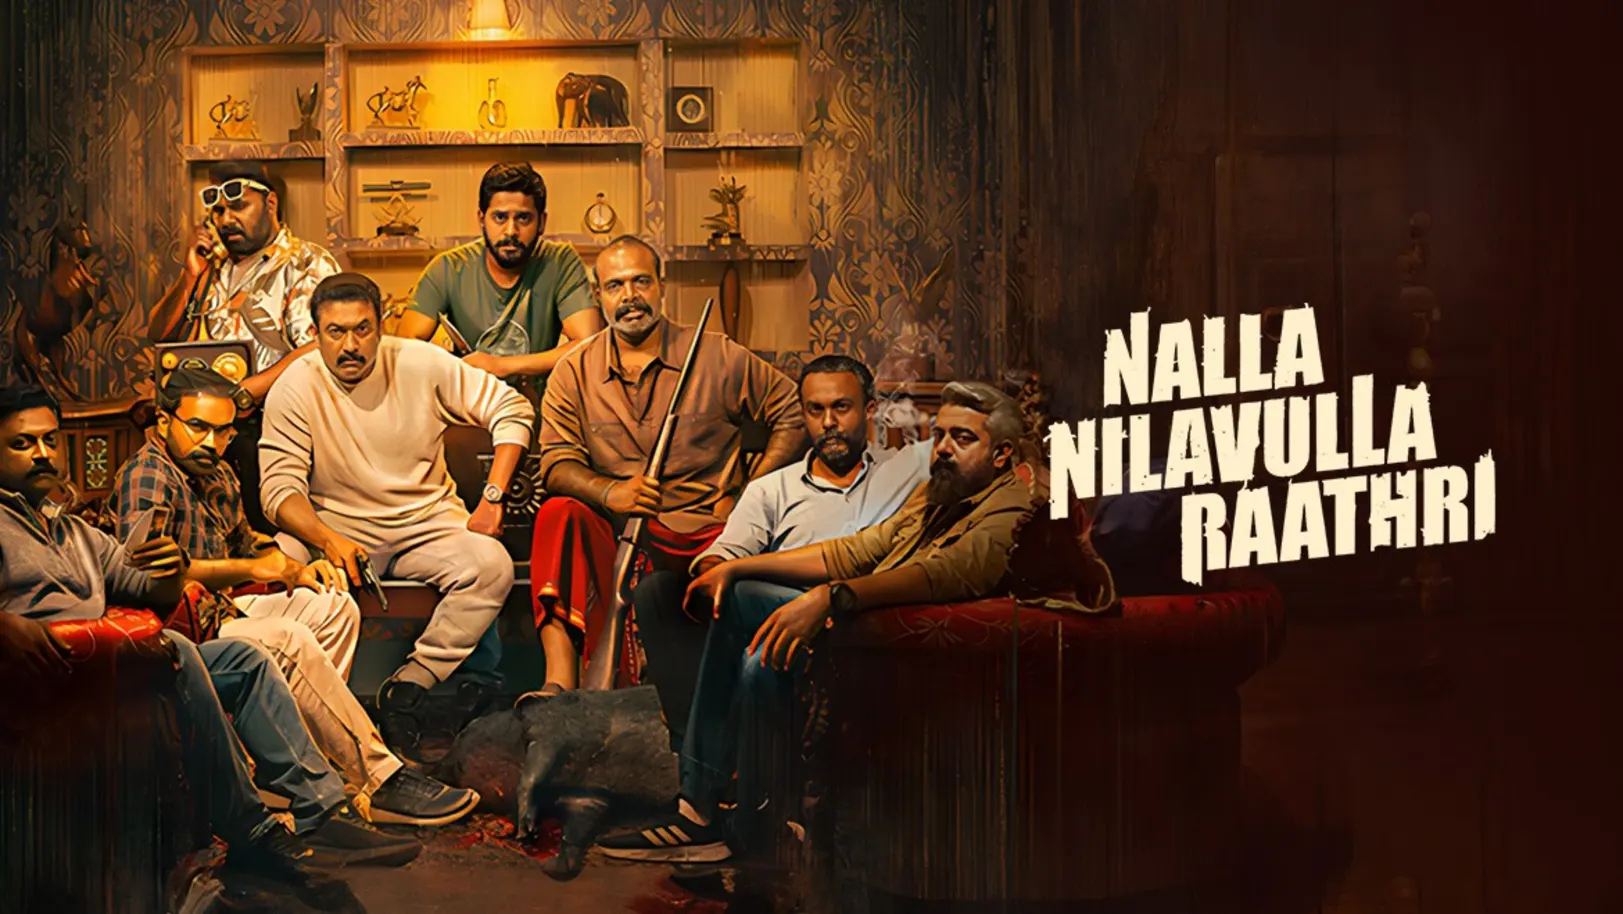 Nalla Nilavulla Rathri Movie